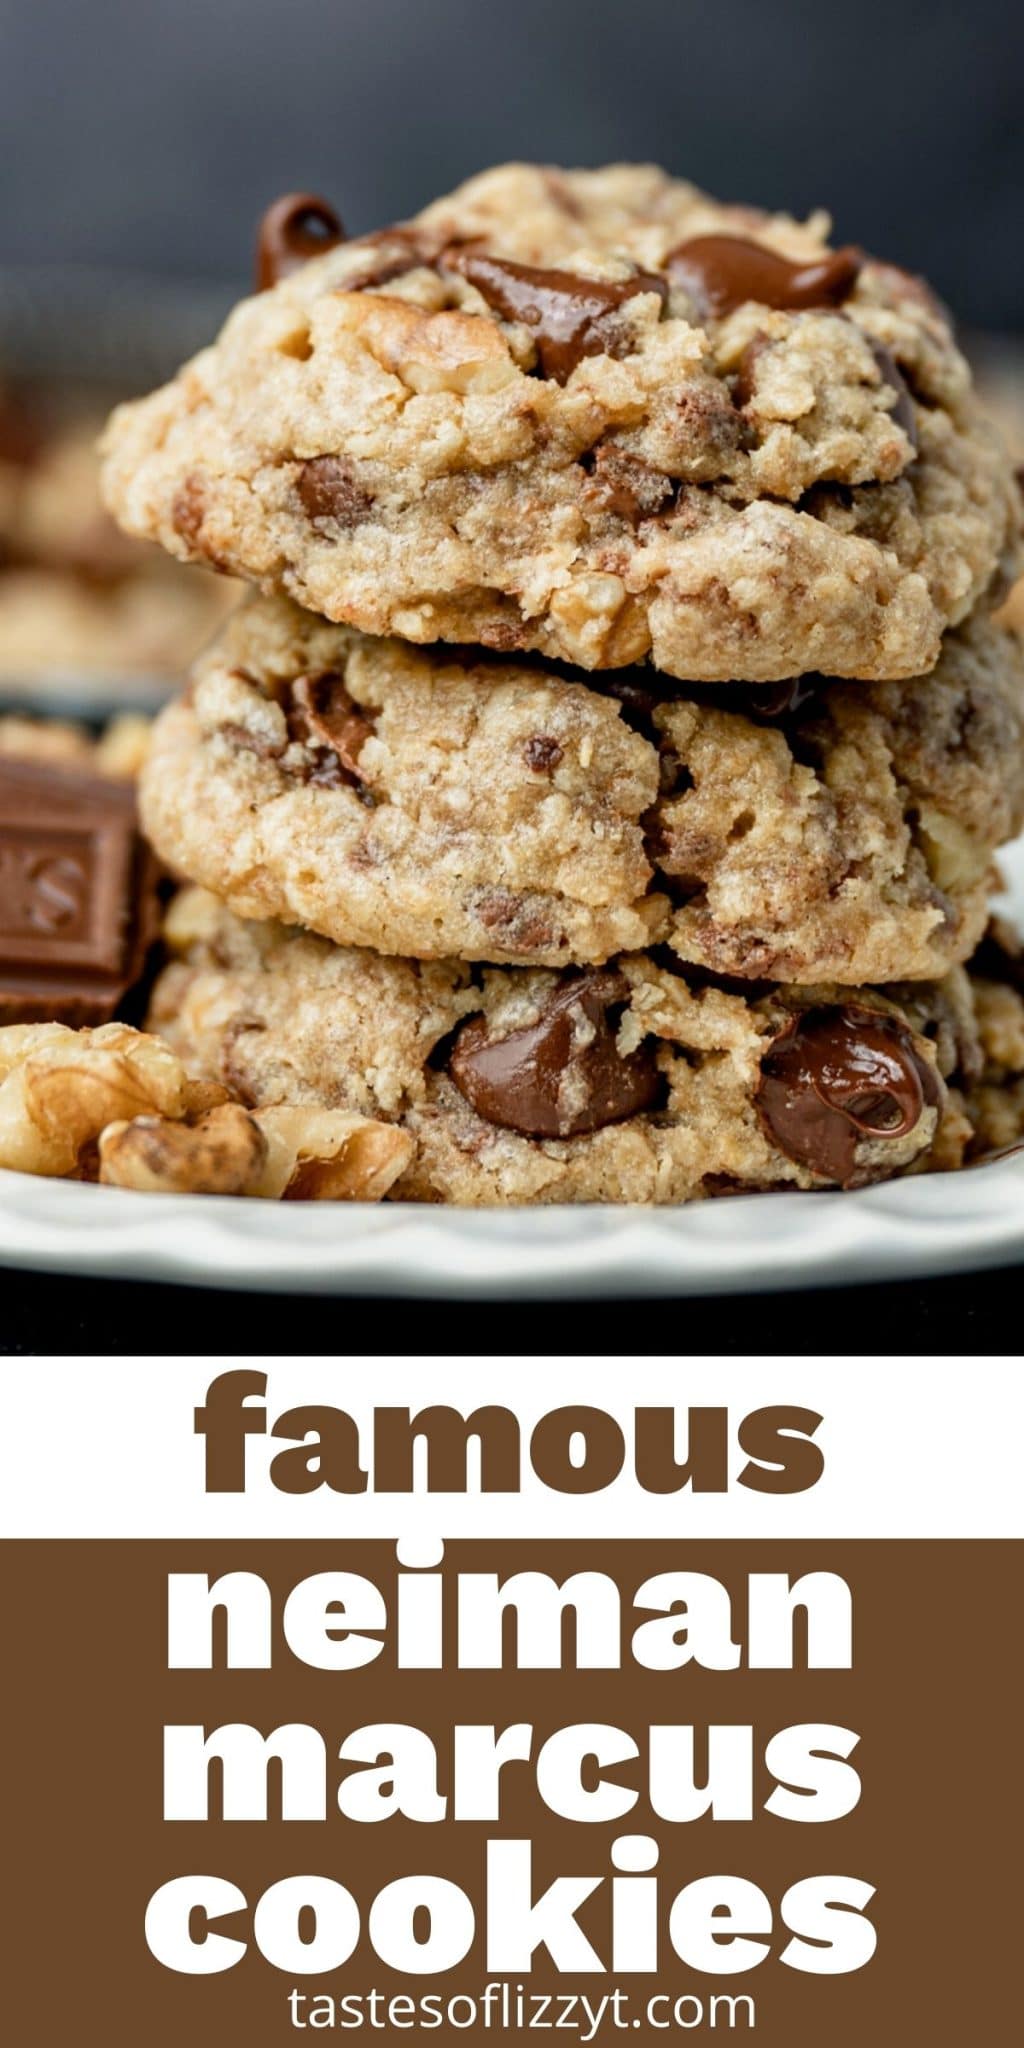 Neiman Marcus Cookies - Pudge Factor